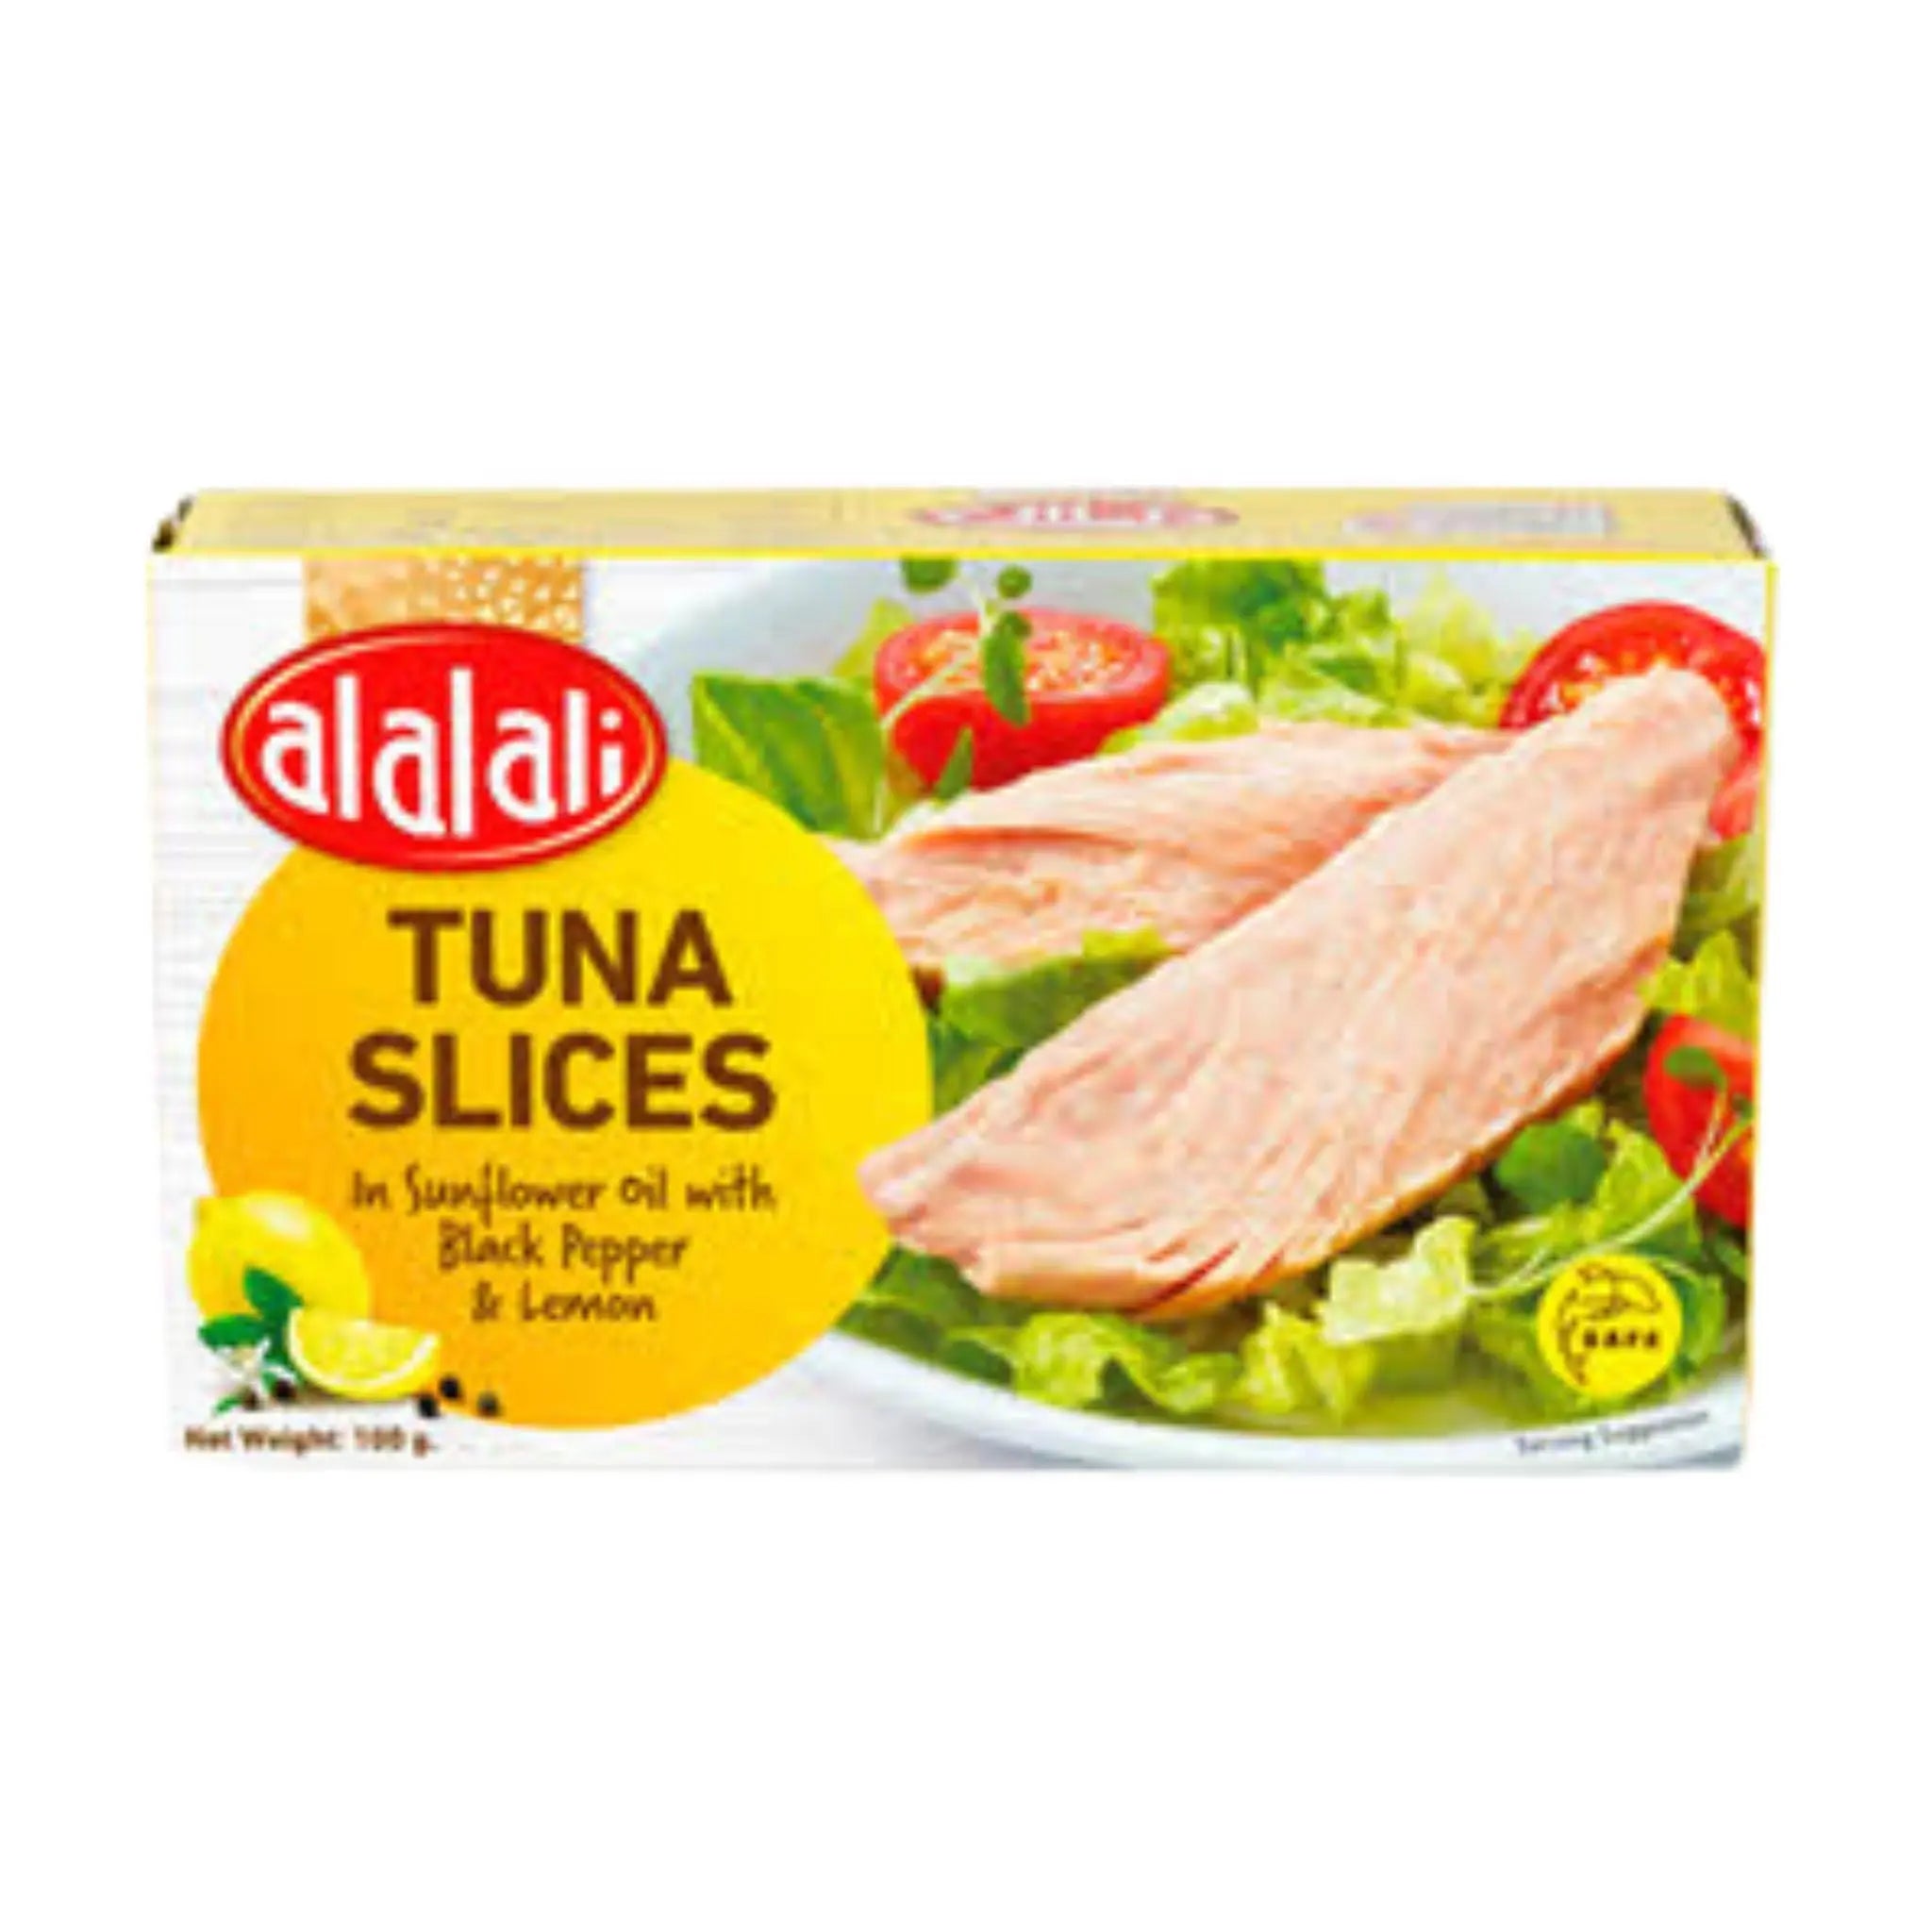 Al Alali Tuna Slices with Pepper & Lemon in Sunflower Oil - 24x100g (1 Carton) Marino.AE